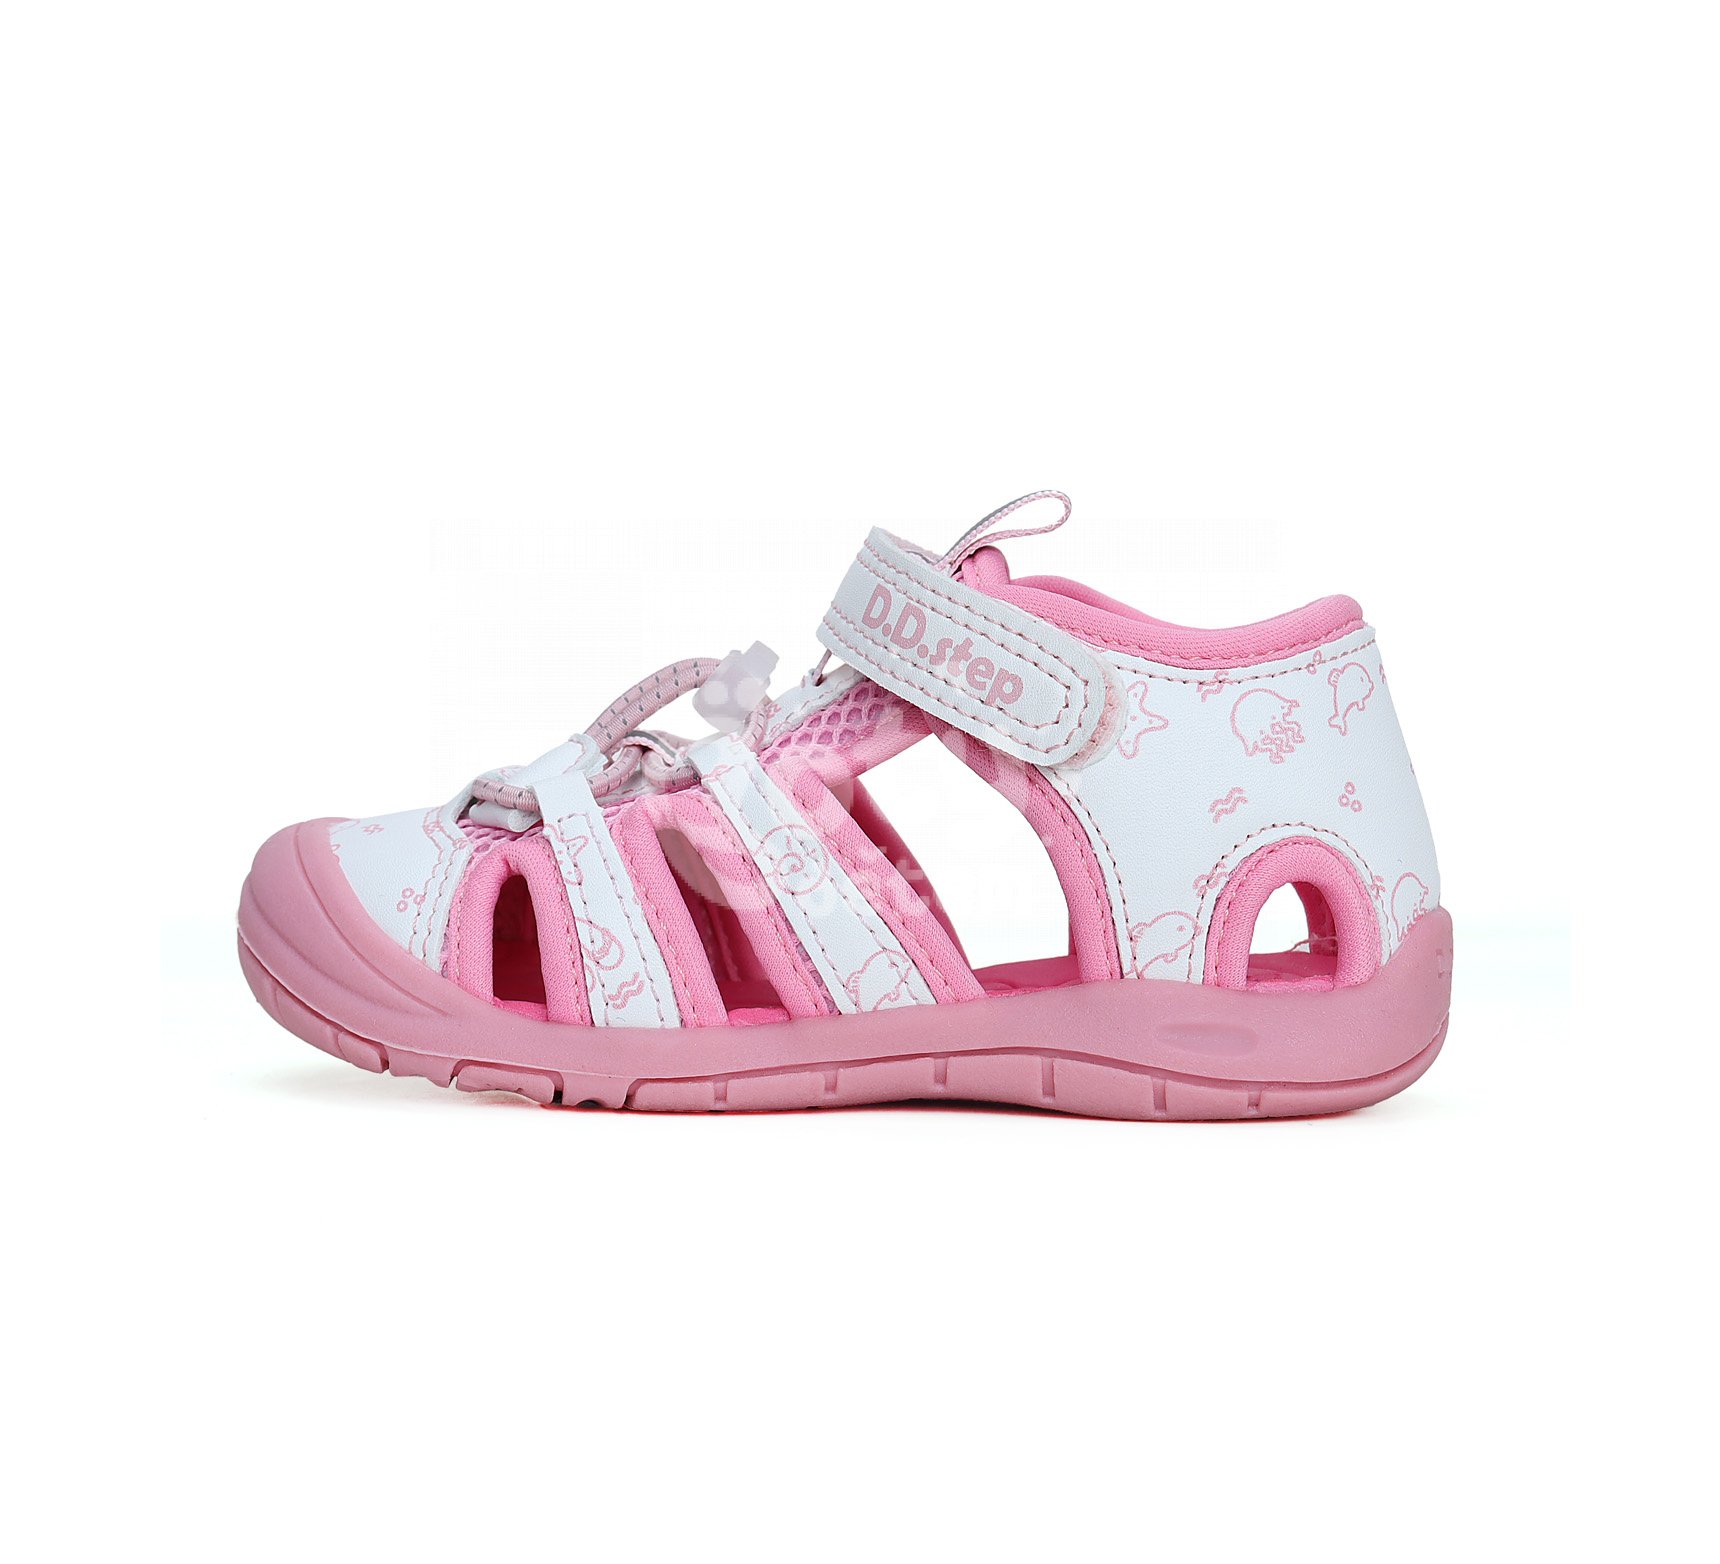 Sportovní sandálky D.D.step G065-41329C Pink